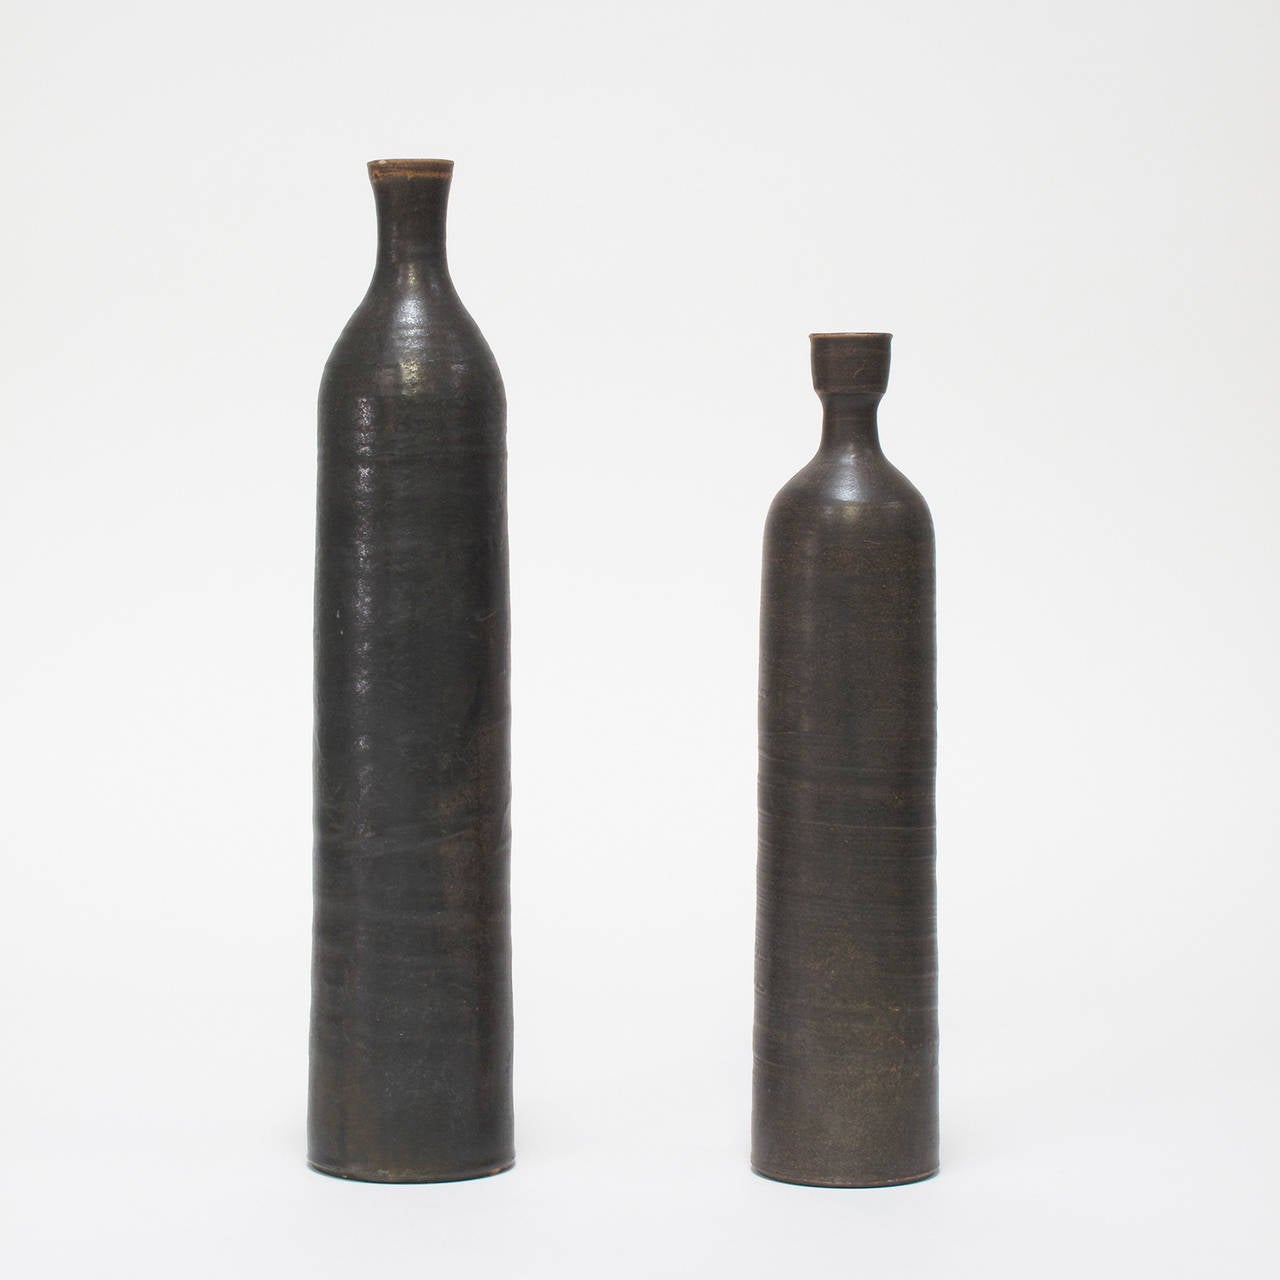 Scandinavian Modern Pair of Glazed Ceramic Vases, Denmark